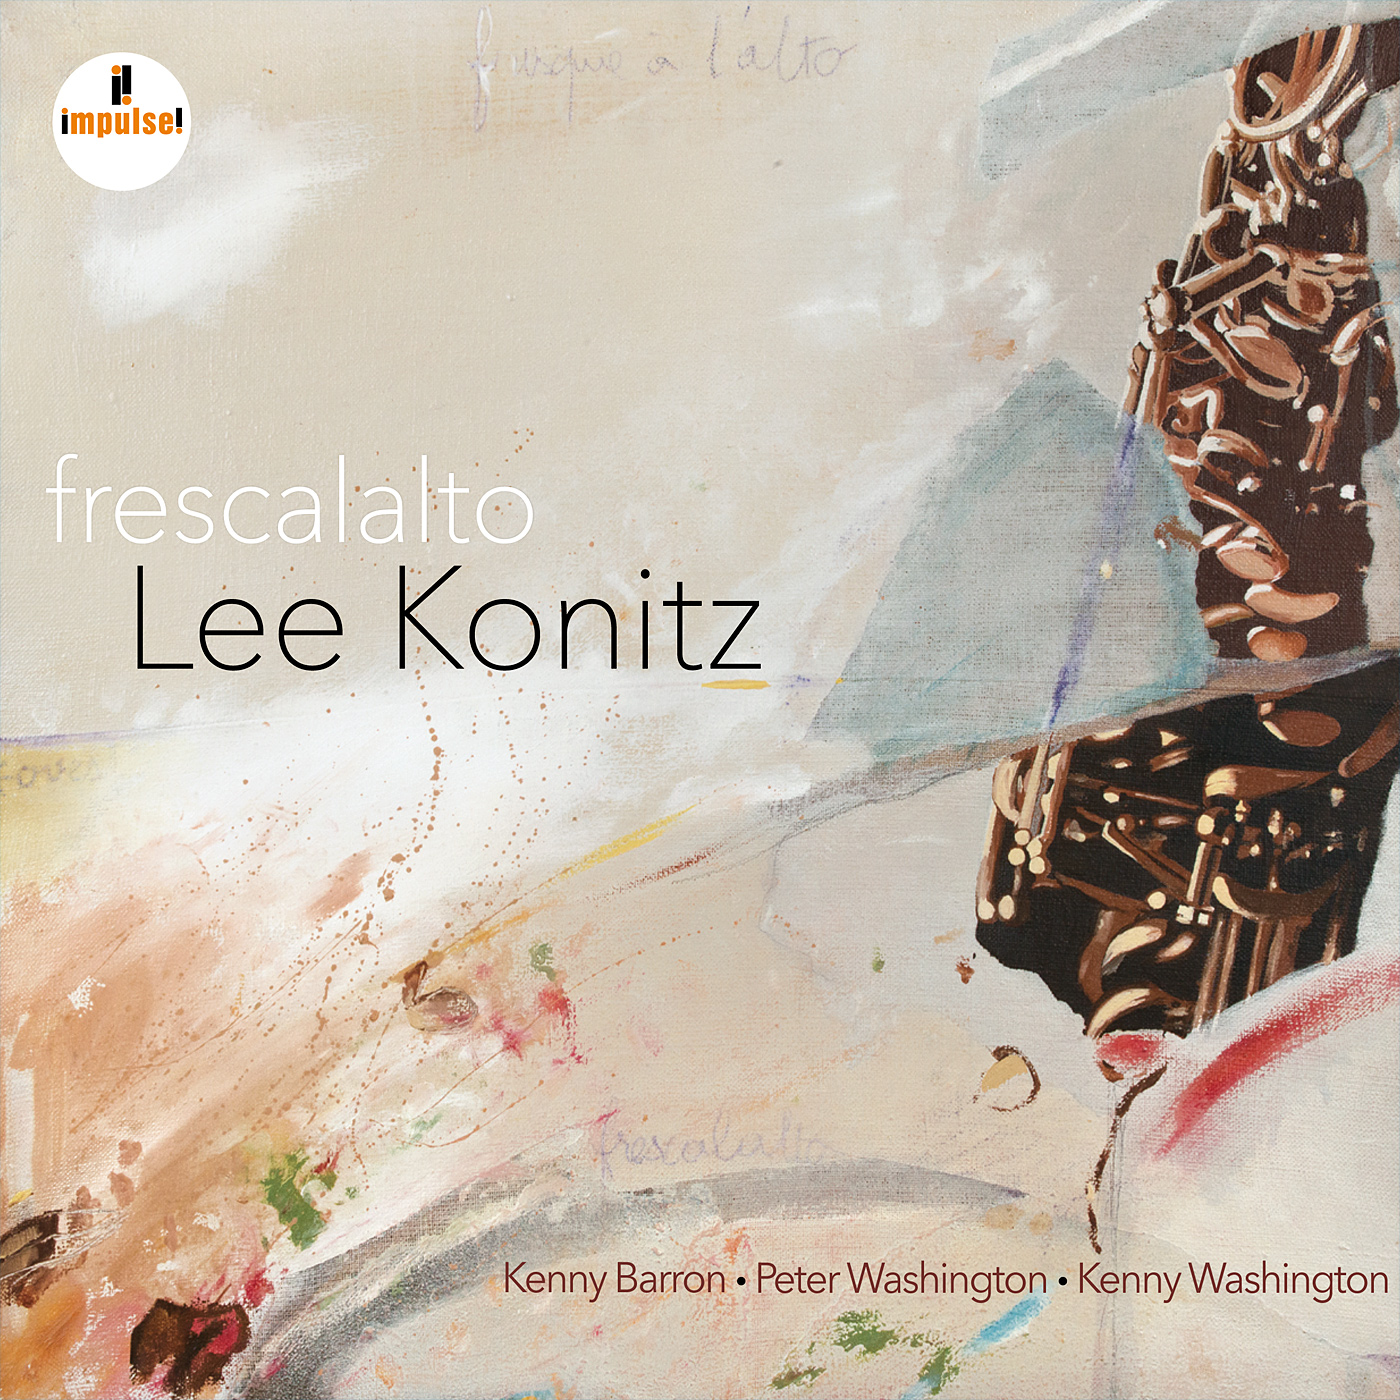 Lee Konitz - Frescalalto (2017) [Qobuz FLAC 24bit/96kHz]